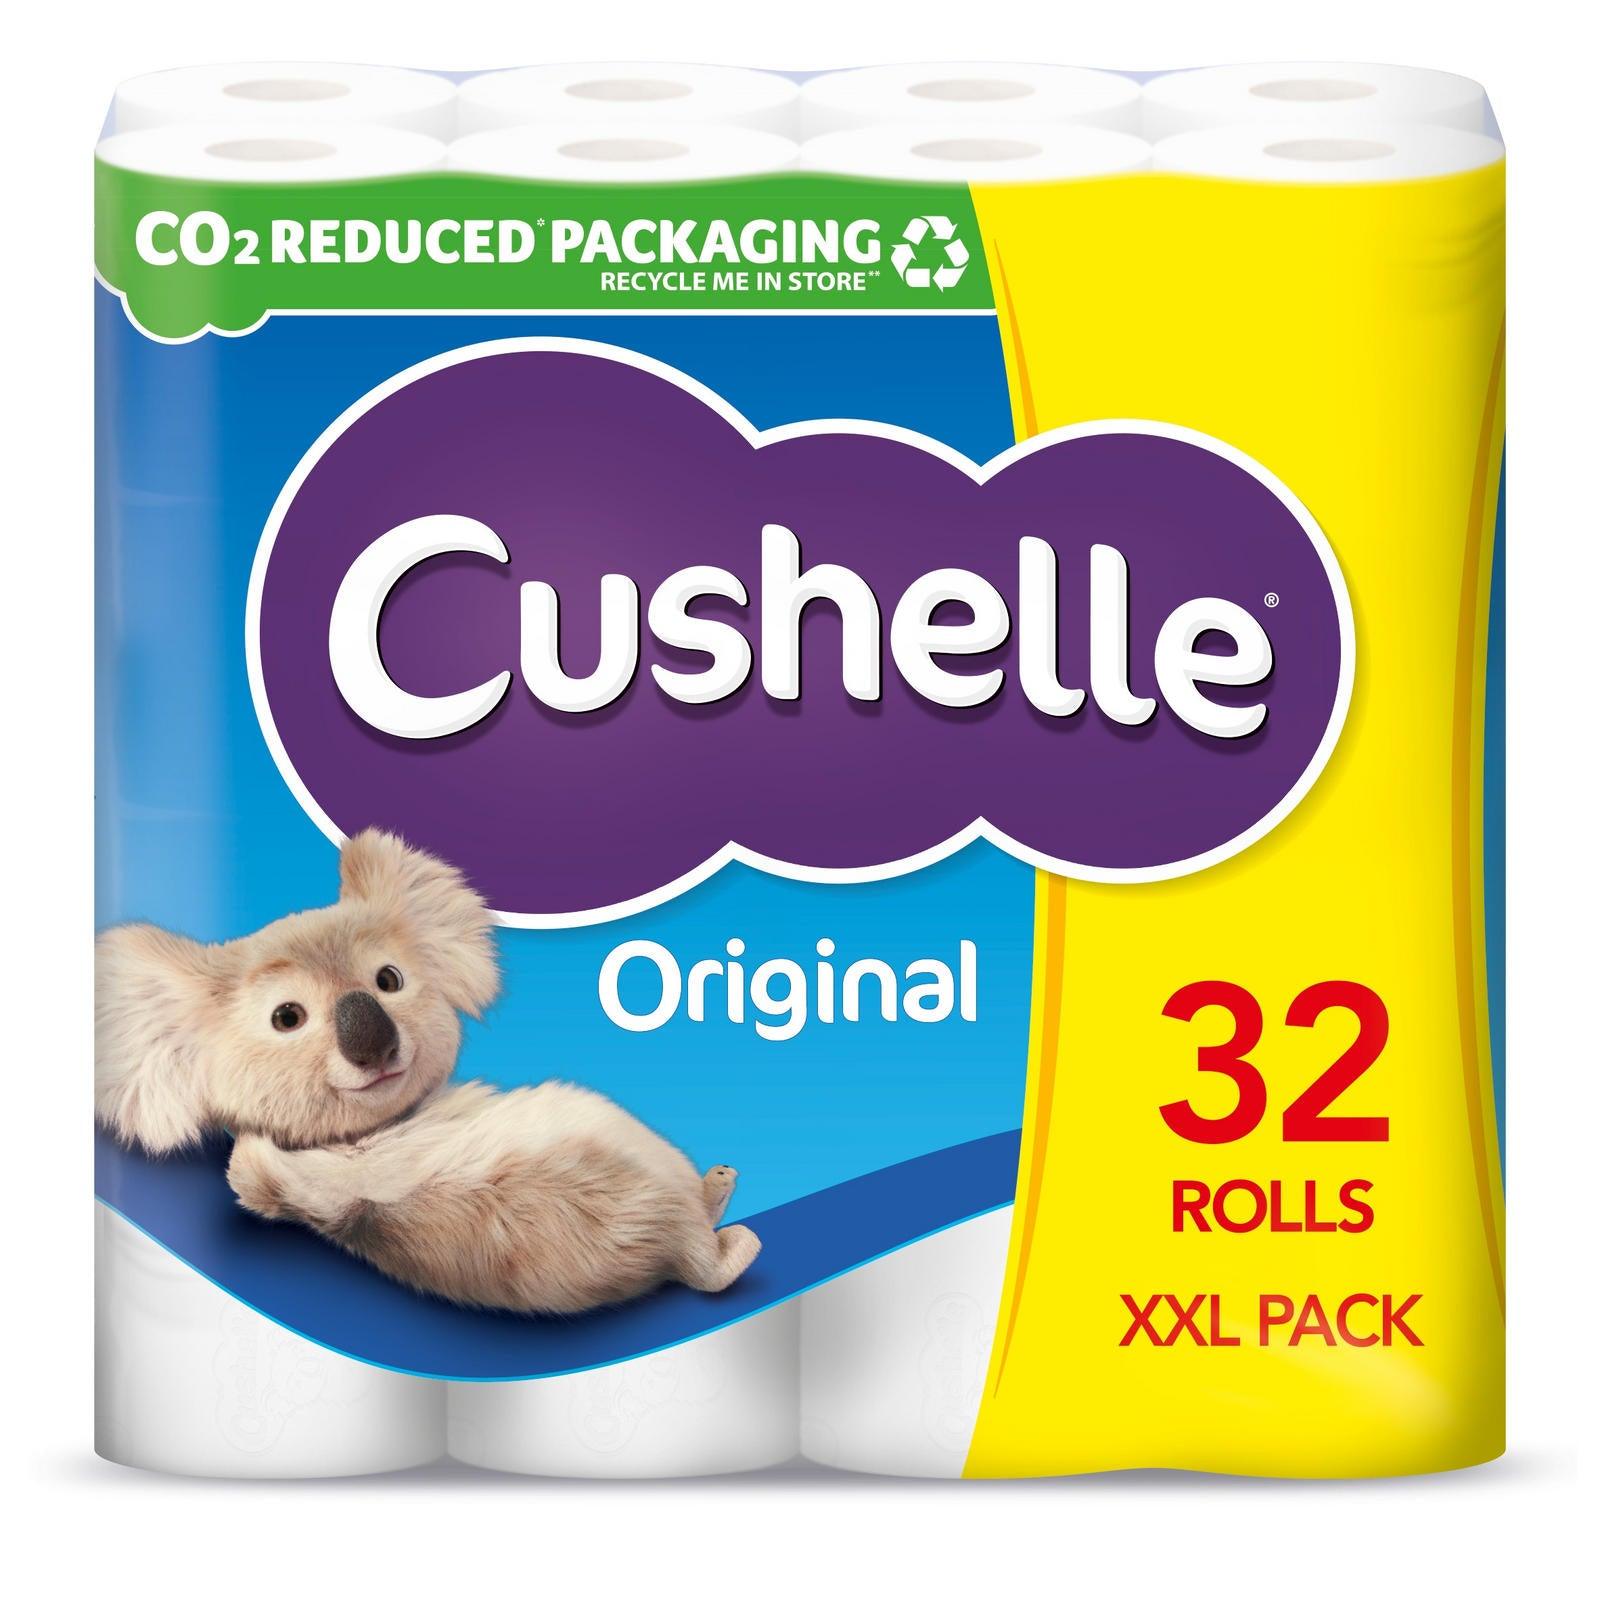 Cushelle Toilet Roll White XXL (32 Pack) - Vending Superstore